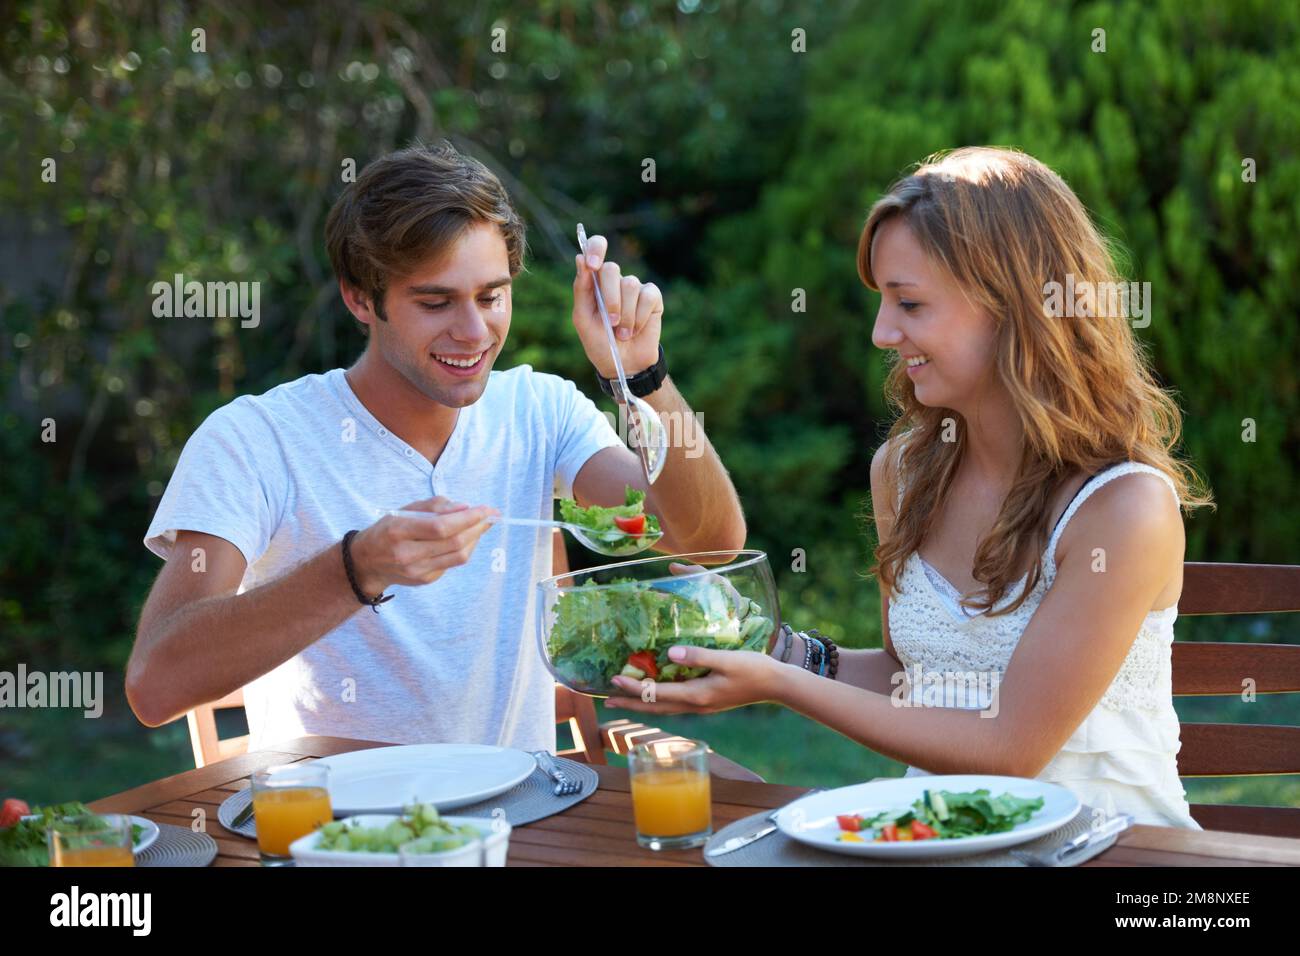 Treffen gesunder Lebensmittel Entscheidungen. Ein junges Teenager-Paar, das ein gesundes Mittagessen mit ihm teilt. Stockfoto